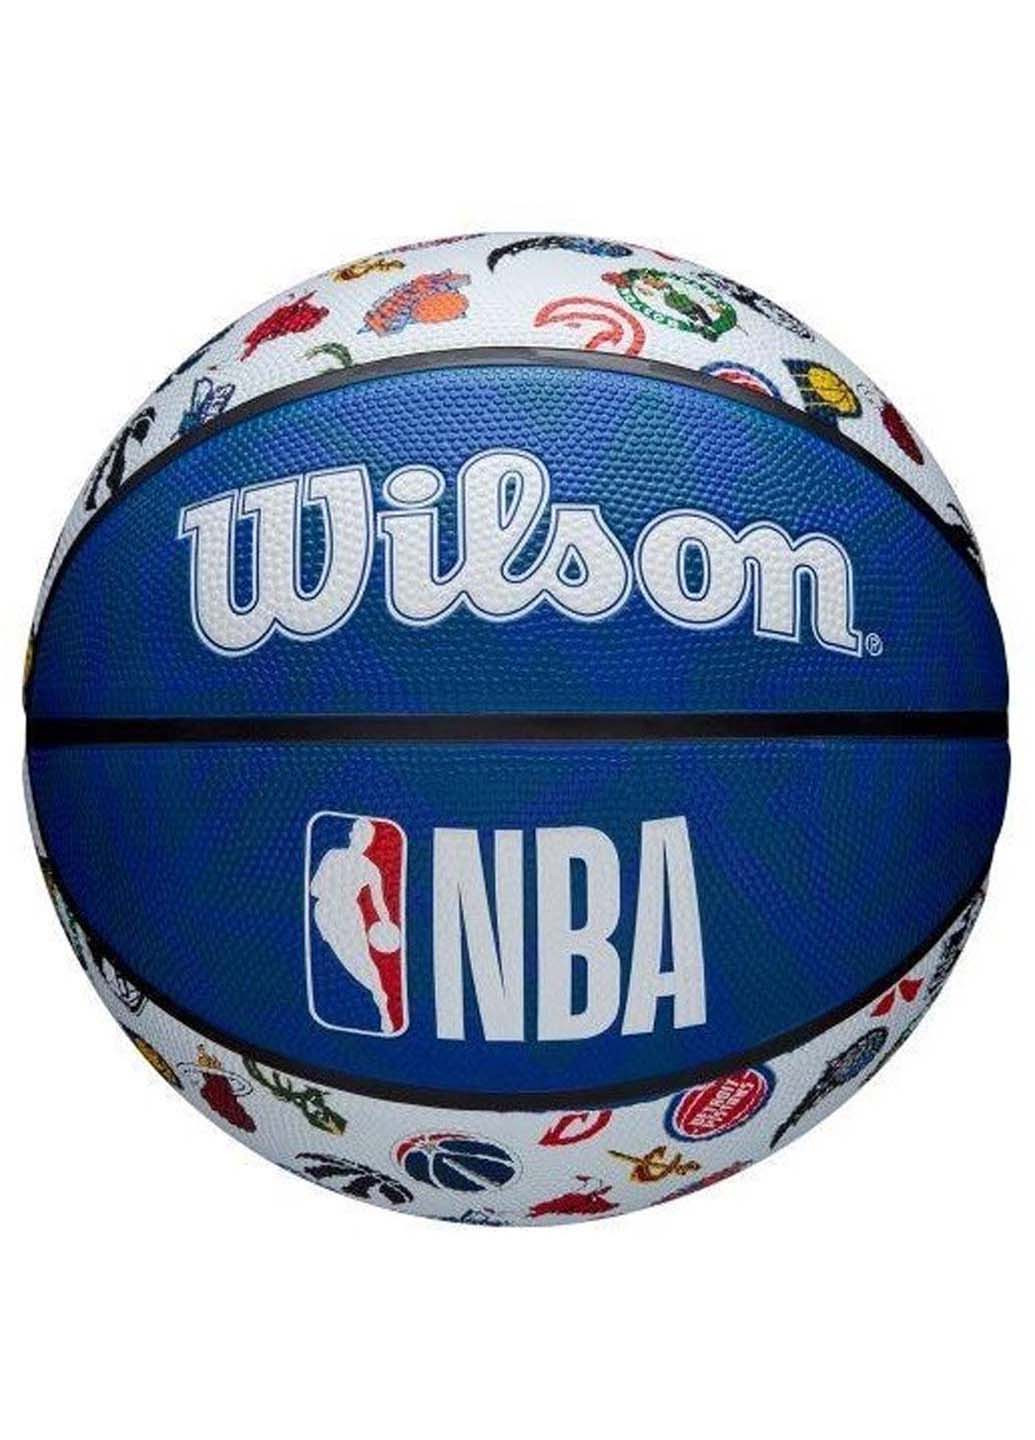 М'яч баскетбольний NBA ALL TEAM Outdoor Size 7 Wilson (257606869)